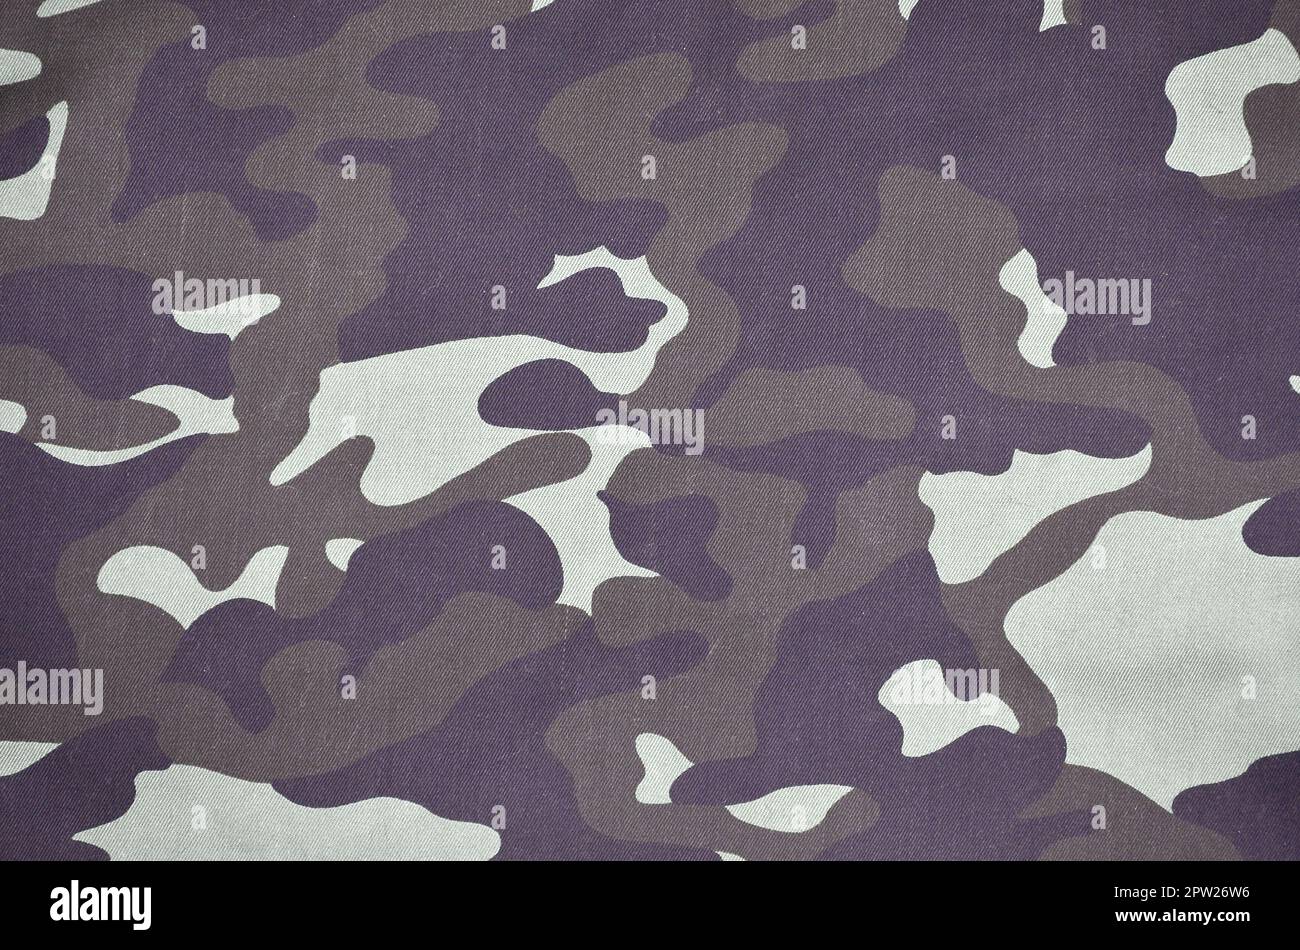 La texture de tissu avec un camouflage peint en couleurs du marais. Image de fond de l'armée. Textile pattern de tissu camouflage militaire Banque D'Images